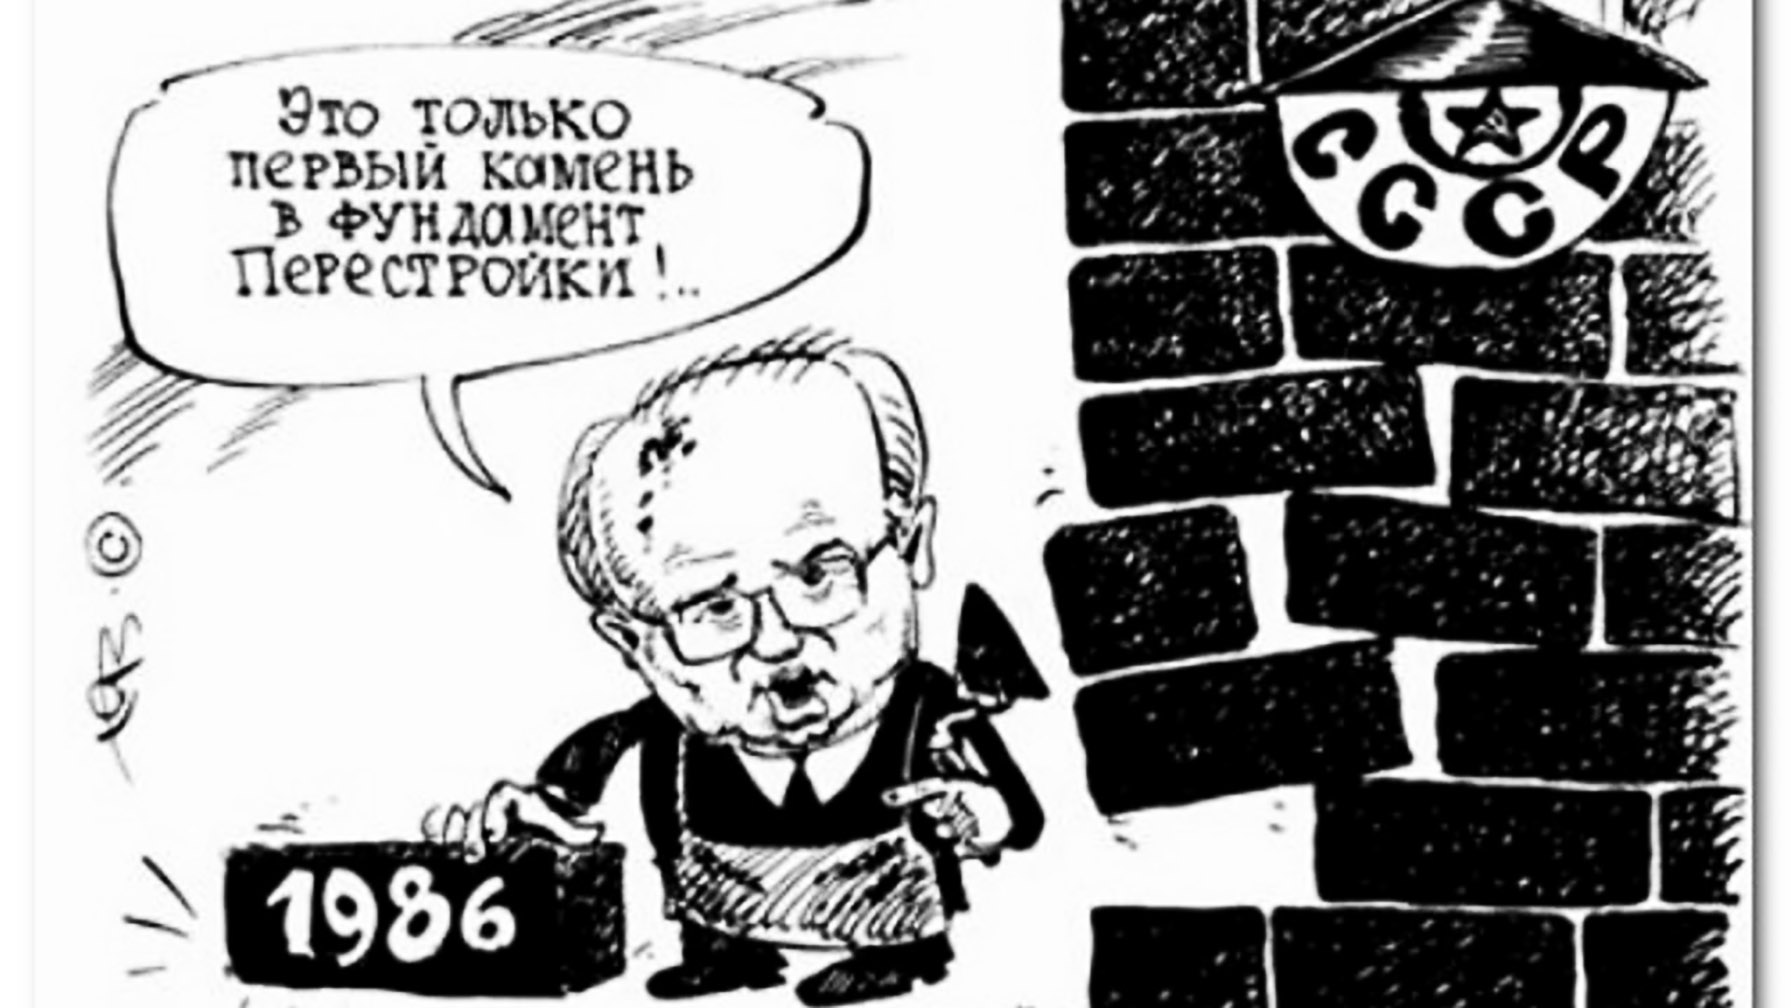 Горбачёв карикатура СССР развал